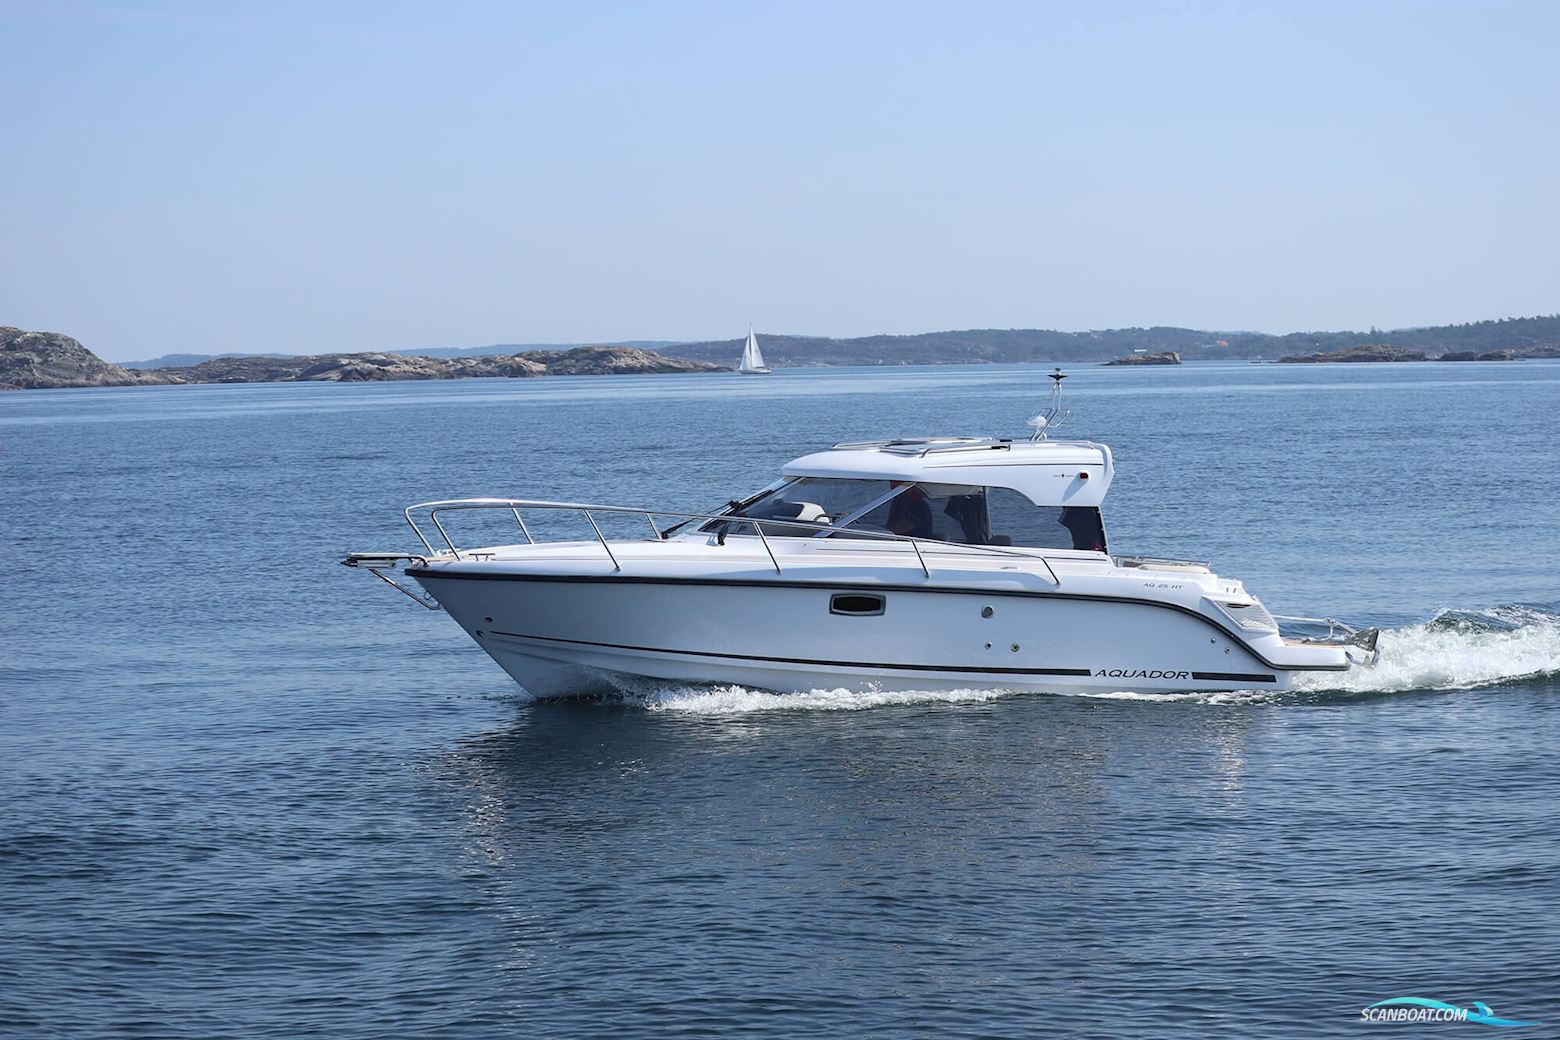 Aquador 25 HT Motorbåt 2023, med Mercruiser 250 hk motor, Sverige